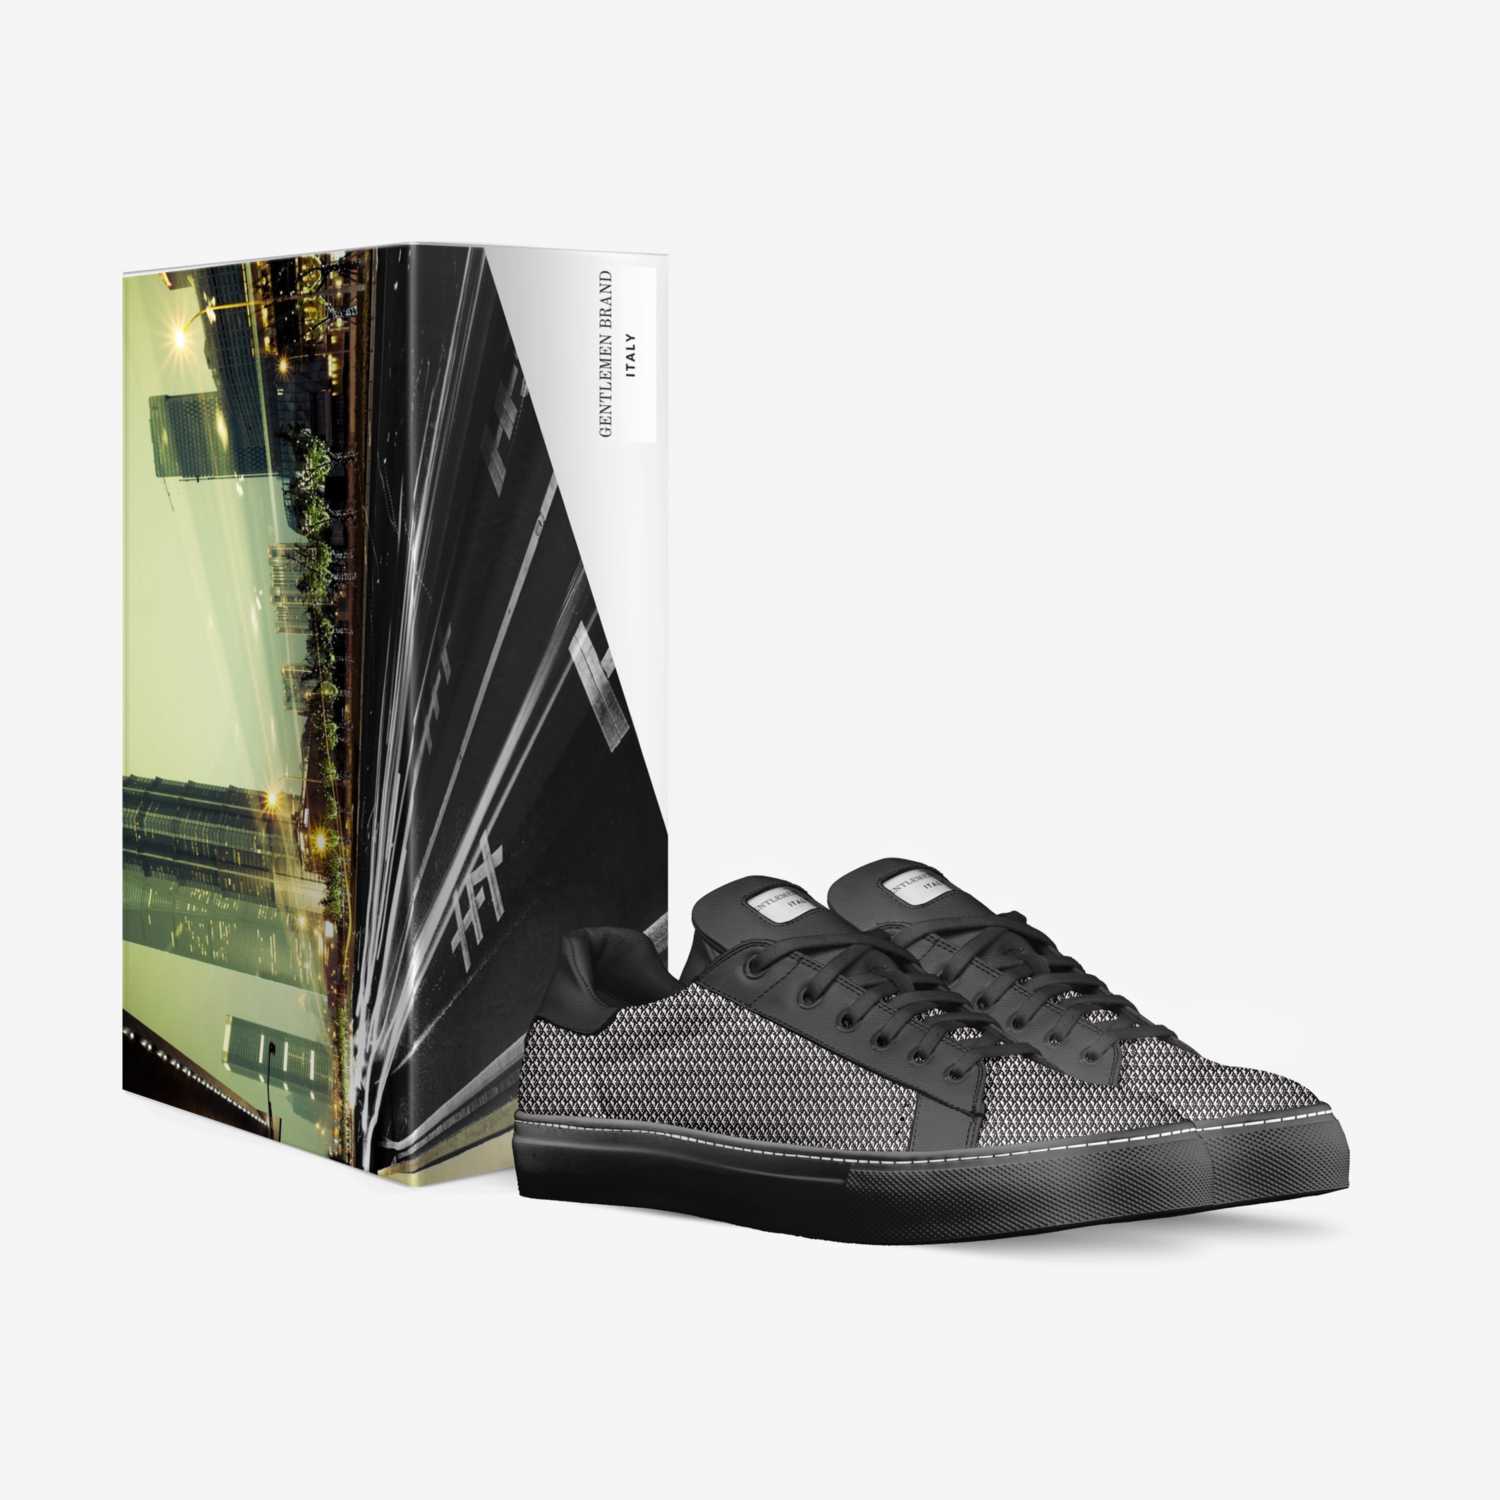  GENTLEMEN BRAND  custom made in Italy shoes by Kareem Rush | Box view